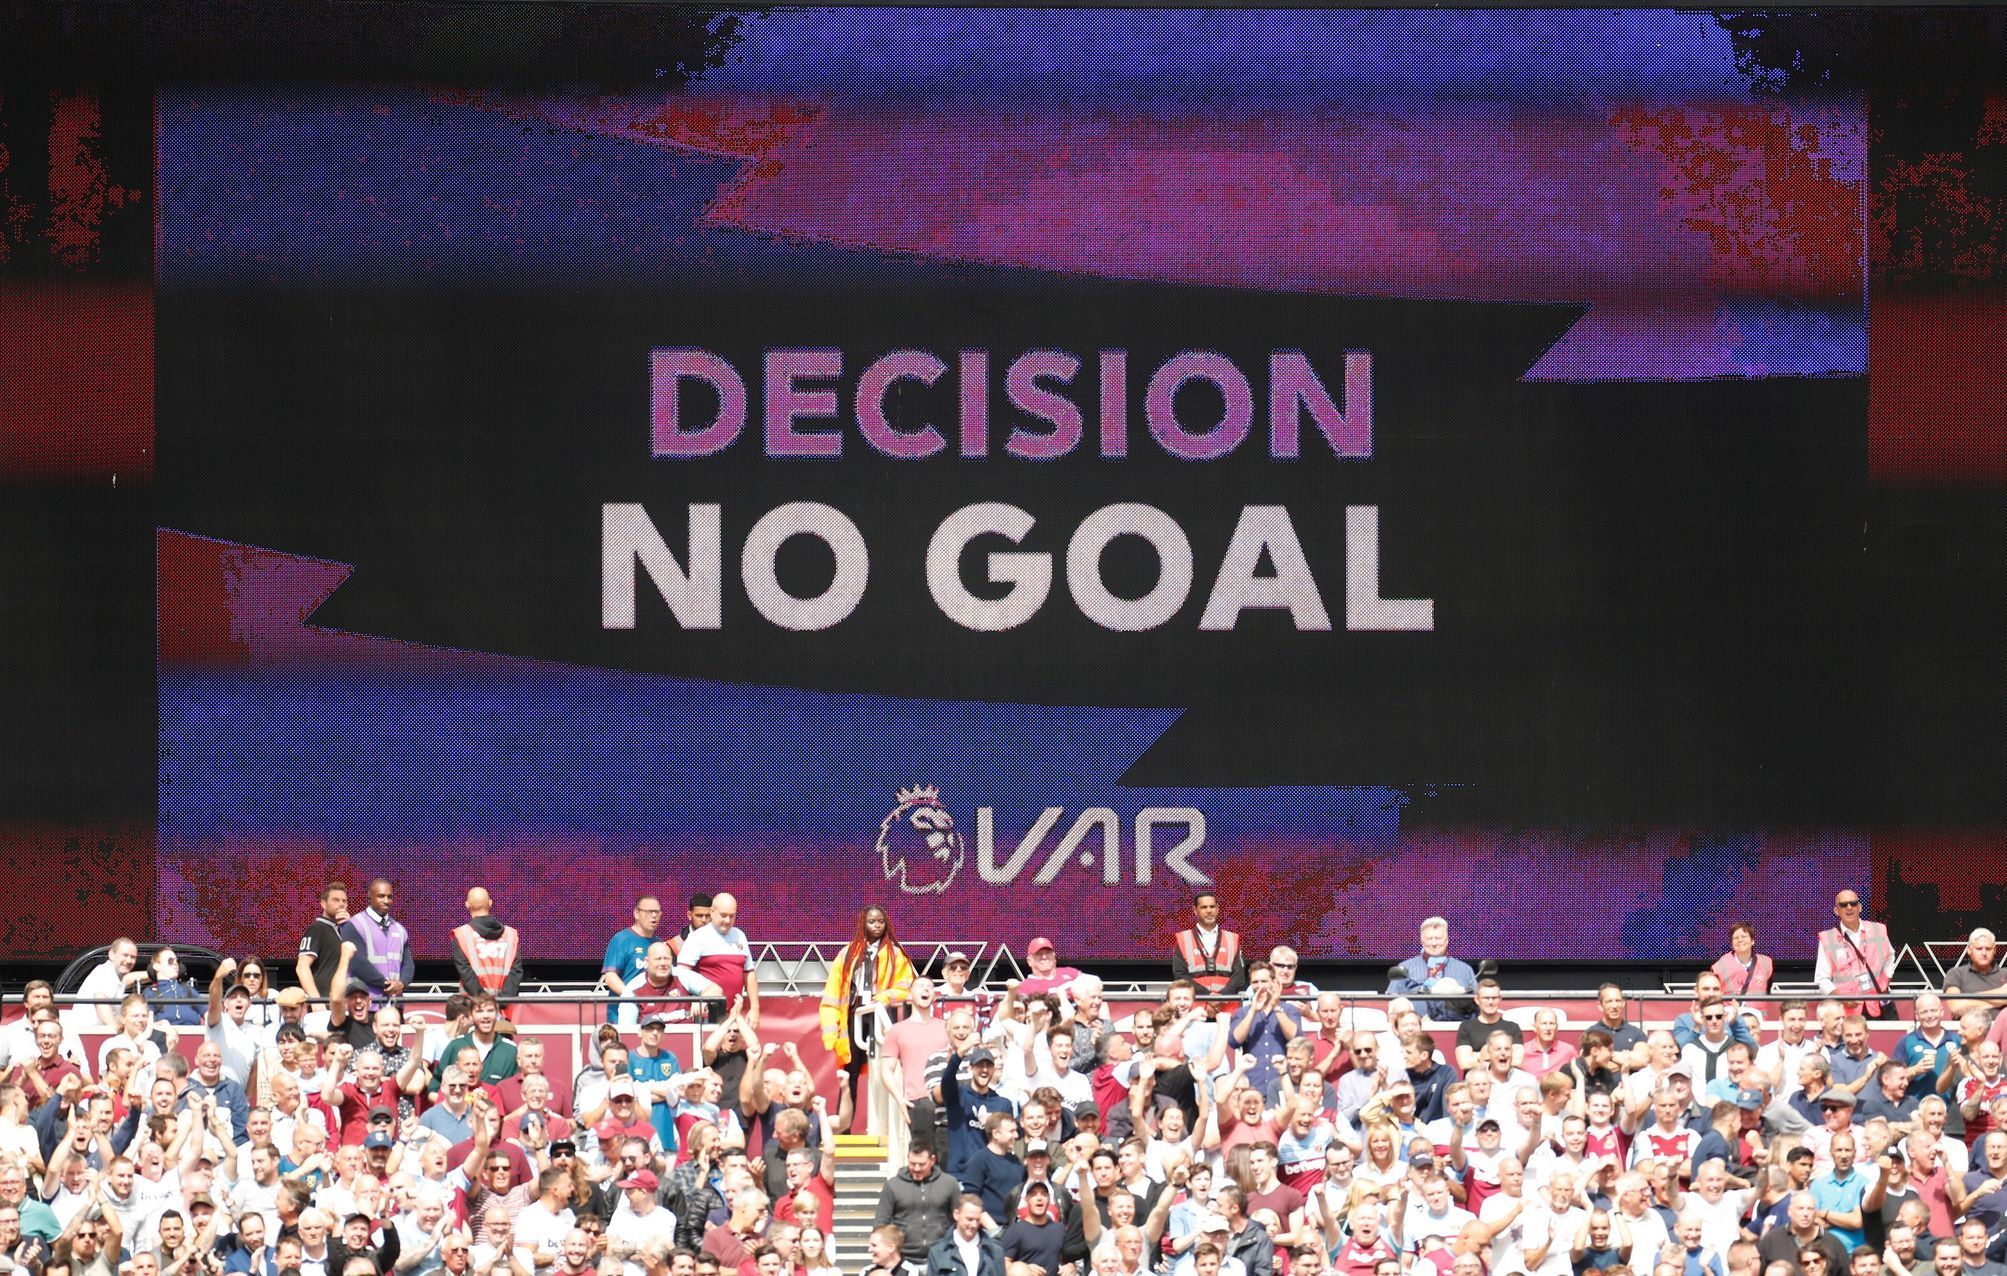 fotbal, anglická liga 2019/2020, West Ham - Manchester City, videorozhodčí ukazuje, proč neuznal hostům gól